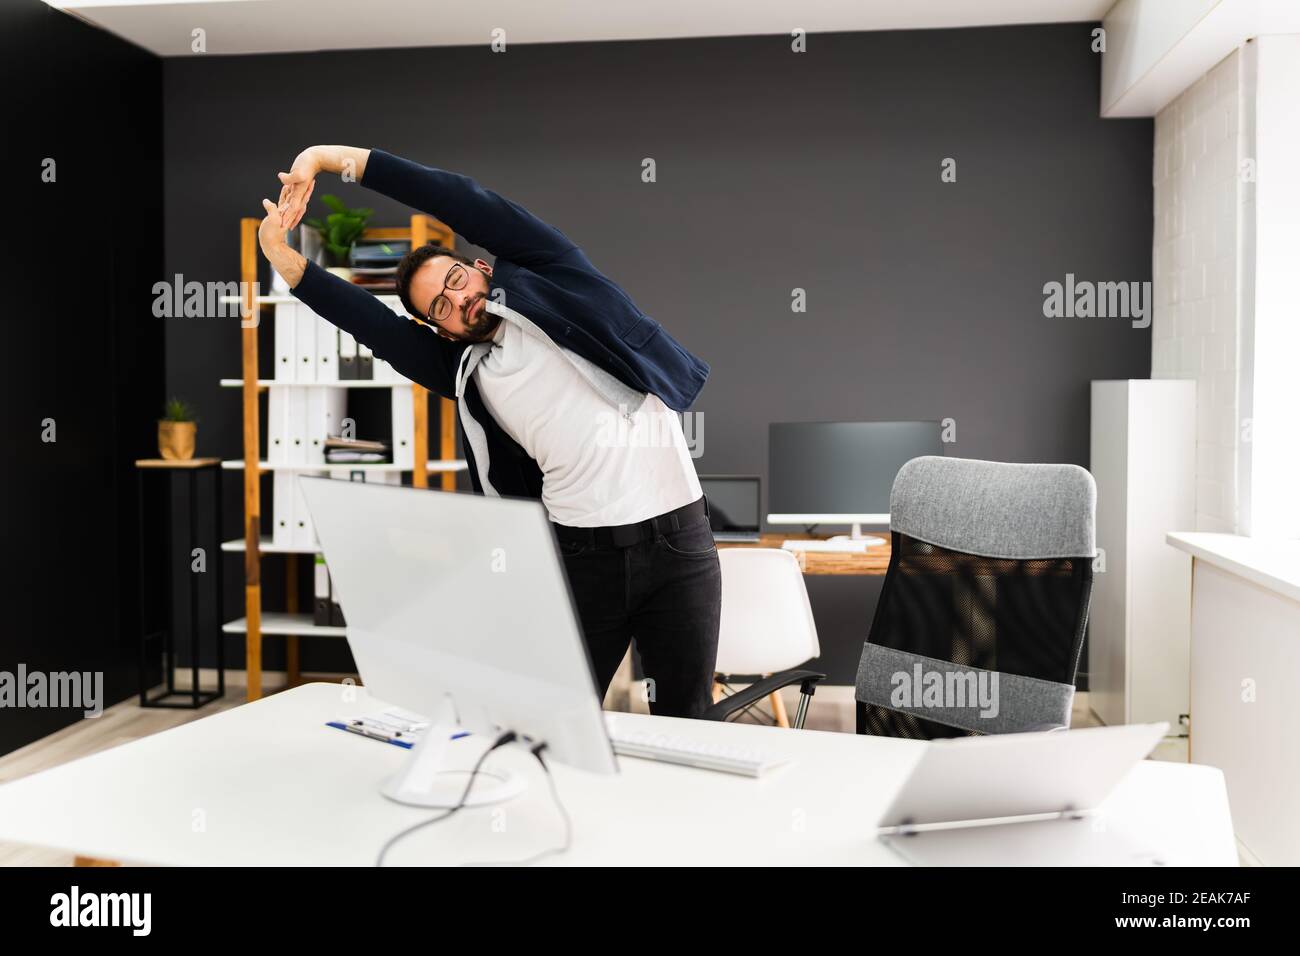 Übung Stretch Stehen In Der Nähe Des Büroschreibens Stockfoto